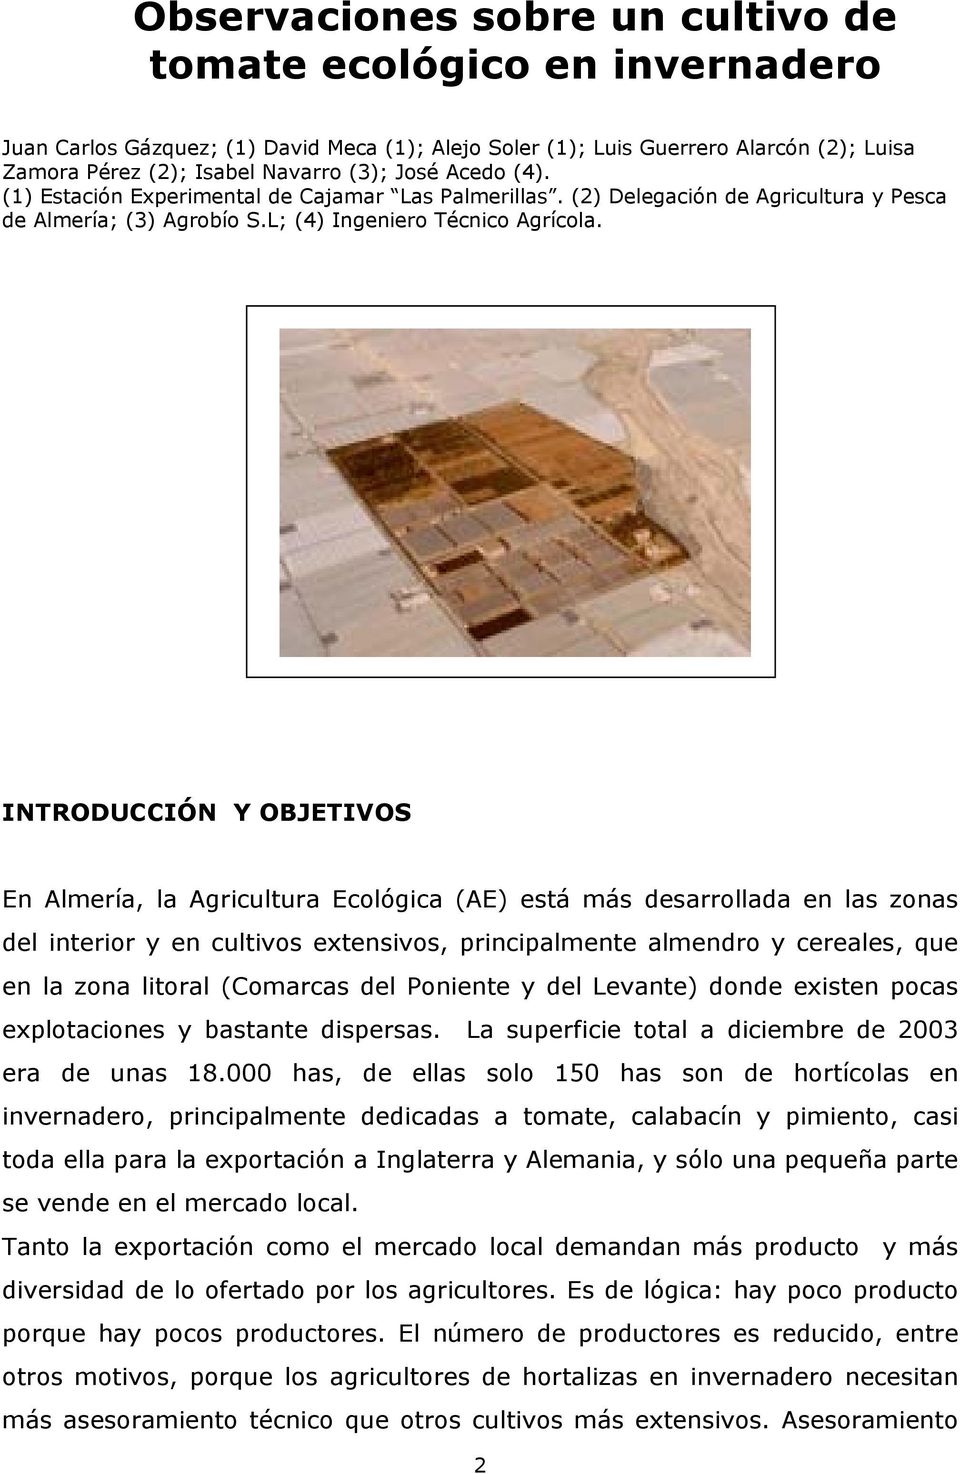 INTRODUCCIÓN Y OBJETIVOS En Almería, la Agricultura Ecológica (AE) está más desarrollada en las zonas del interior y en cultivos extensivos, principalmente almendro y cereales, que en la zona litoral